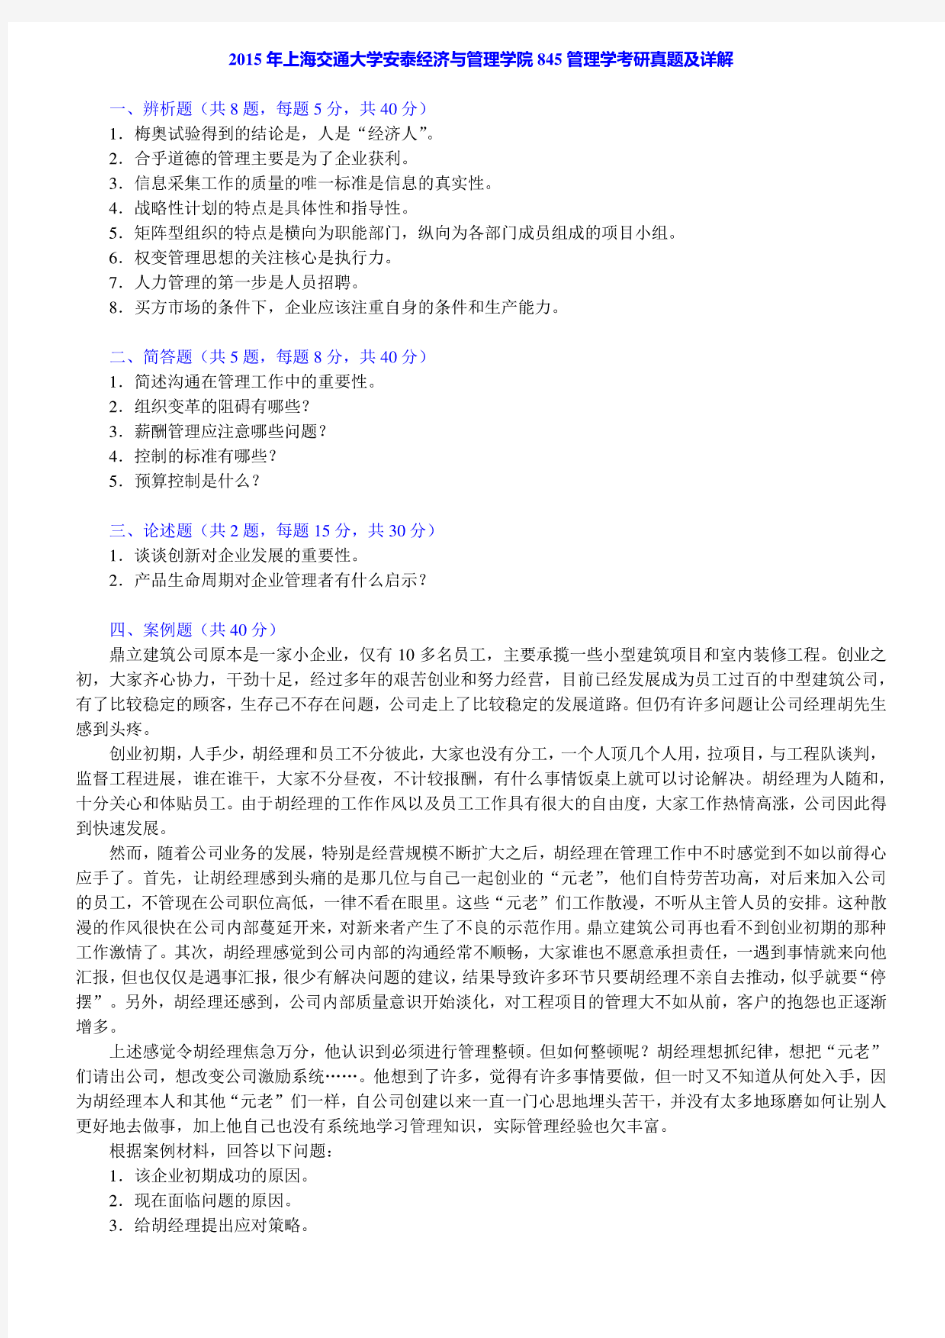 上海交通大学845管理学02-07.14-15年(14年回忆版)真题(03含部分答案)